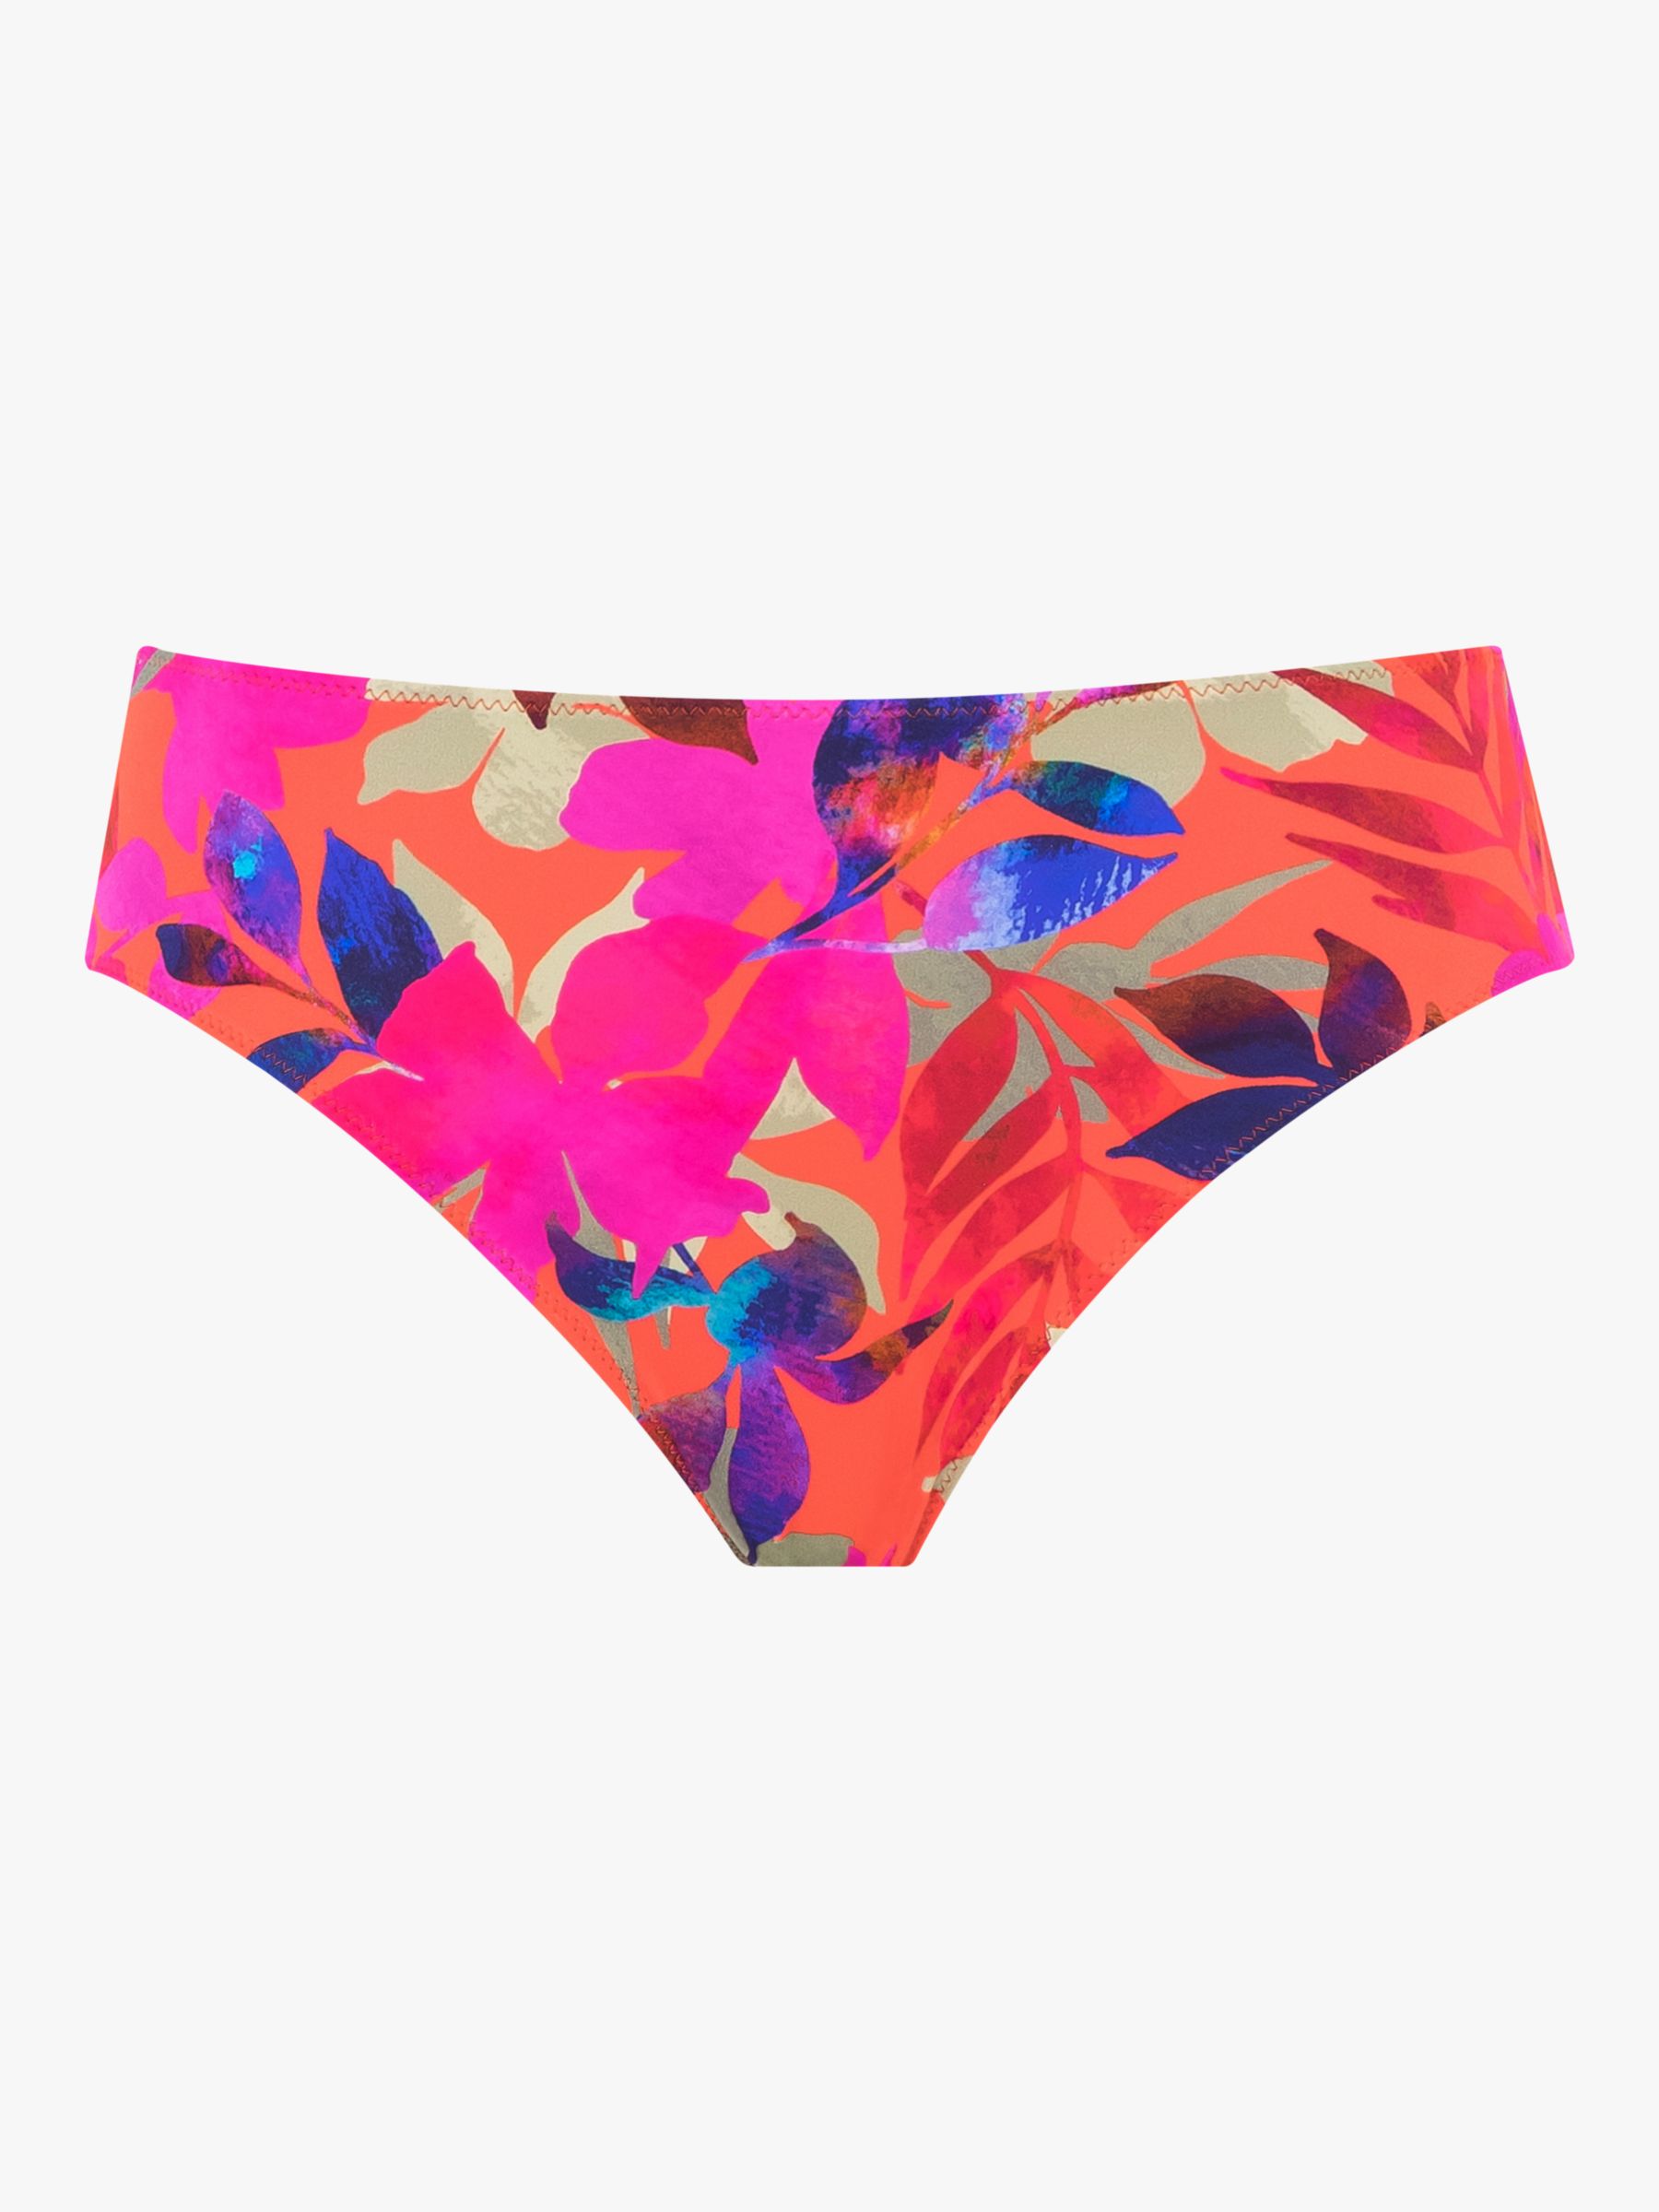 Fantasie Playa de Carmen Beach Party Bikini Bottoms, Multi, XL